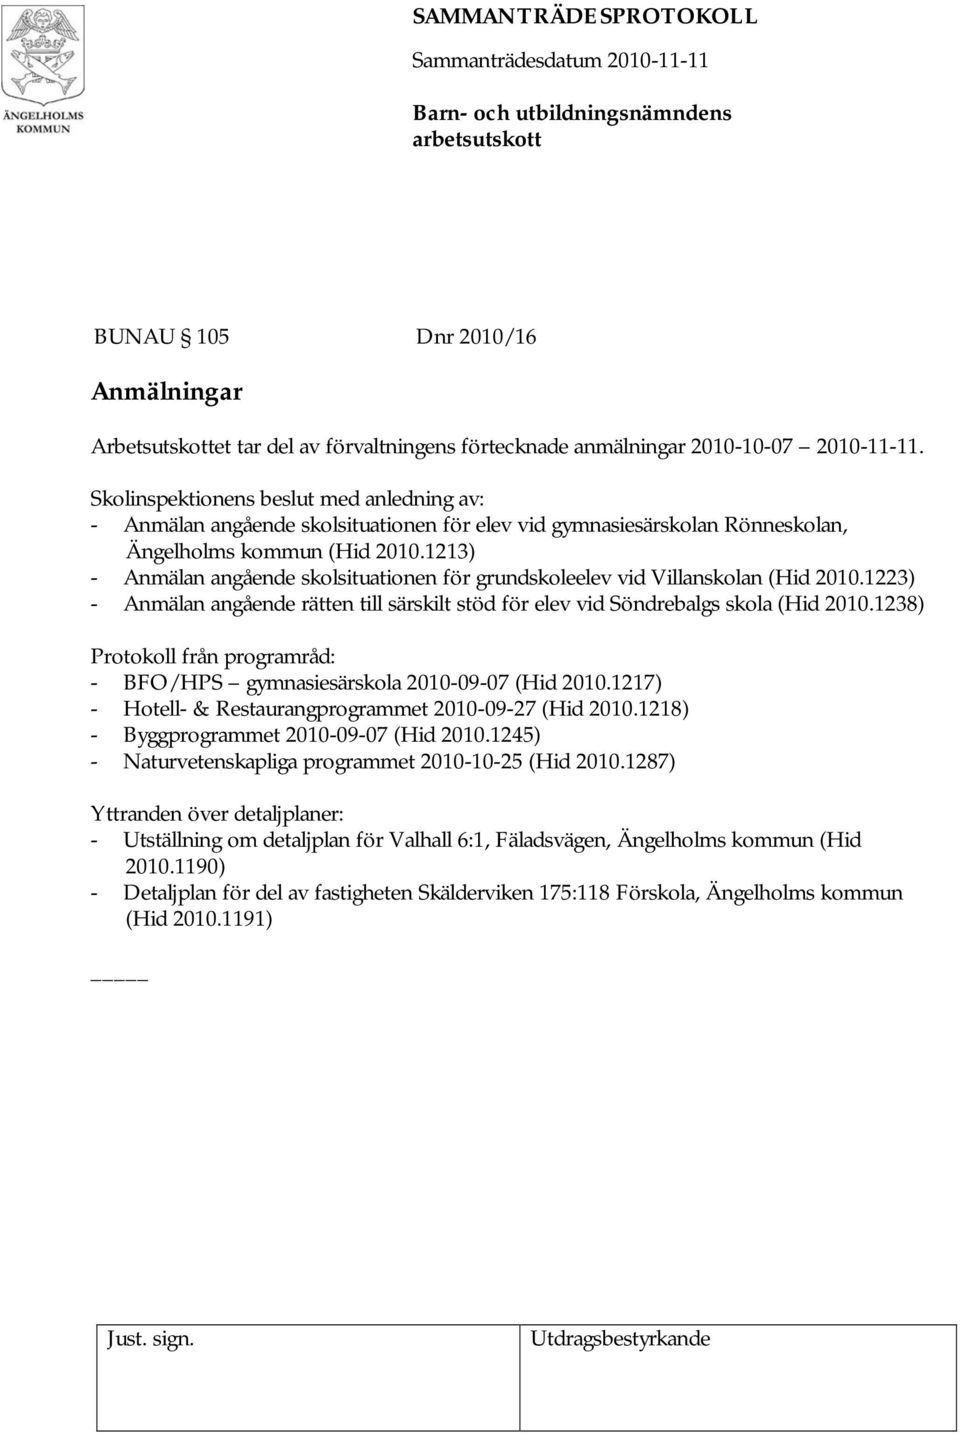 1213) - Anmälan angående skolsituationen för grundskoleelev vid Villanskolan (Hid 2010.1223) - Anmälan angående rätten till särskilt stöd för elev vid Söndrebalgs skola (Hid 2010.